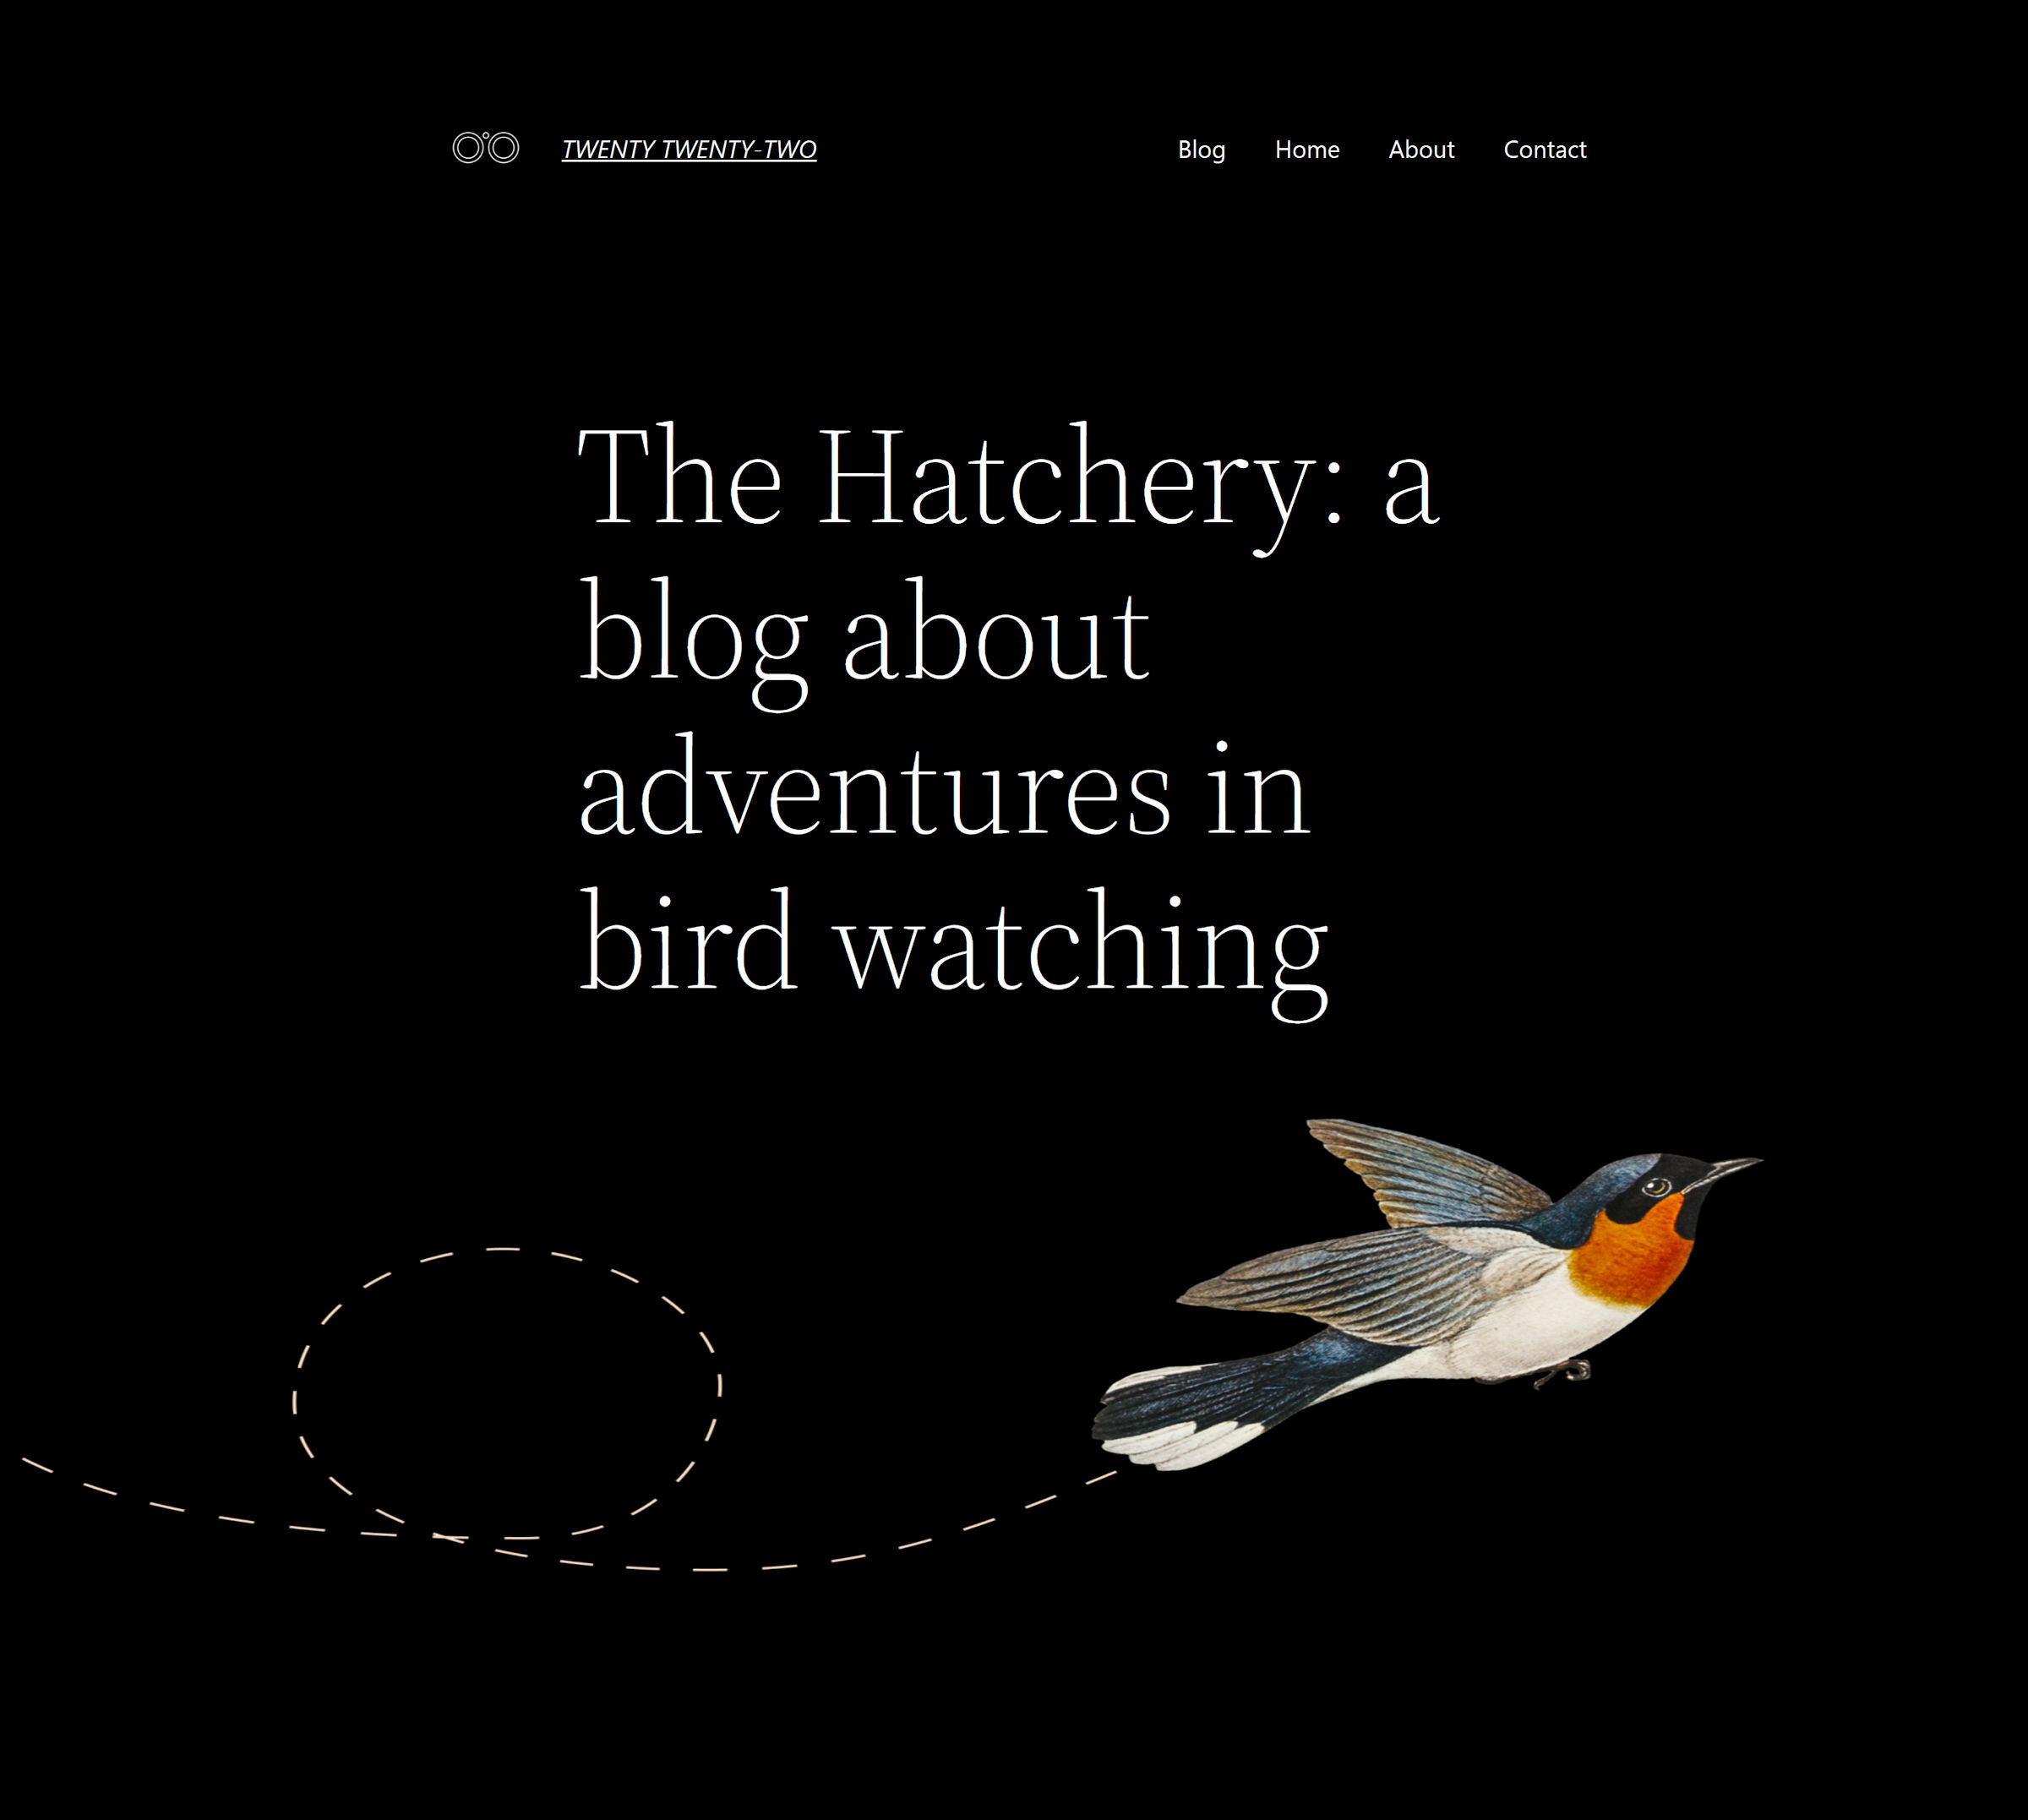 Design della home page del tema WordPress Twenty Twenty-Two che presenta uno sfondo nero con un grande slogan e un'immagine di un uccello in volo nella parte inferiore.